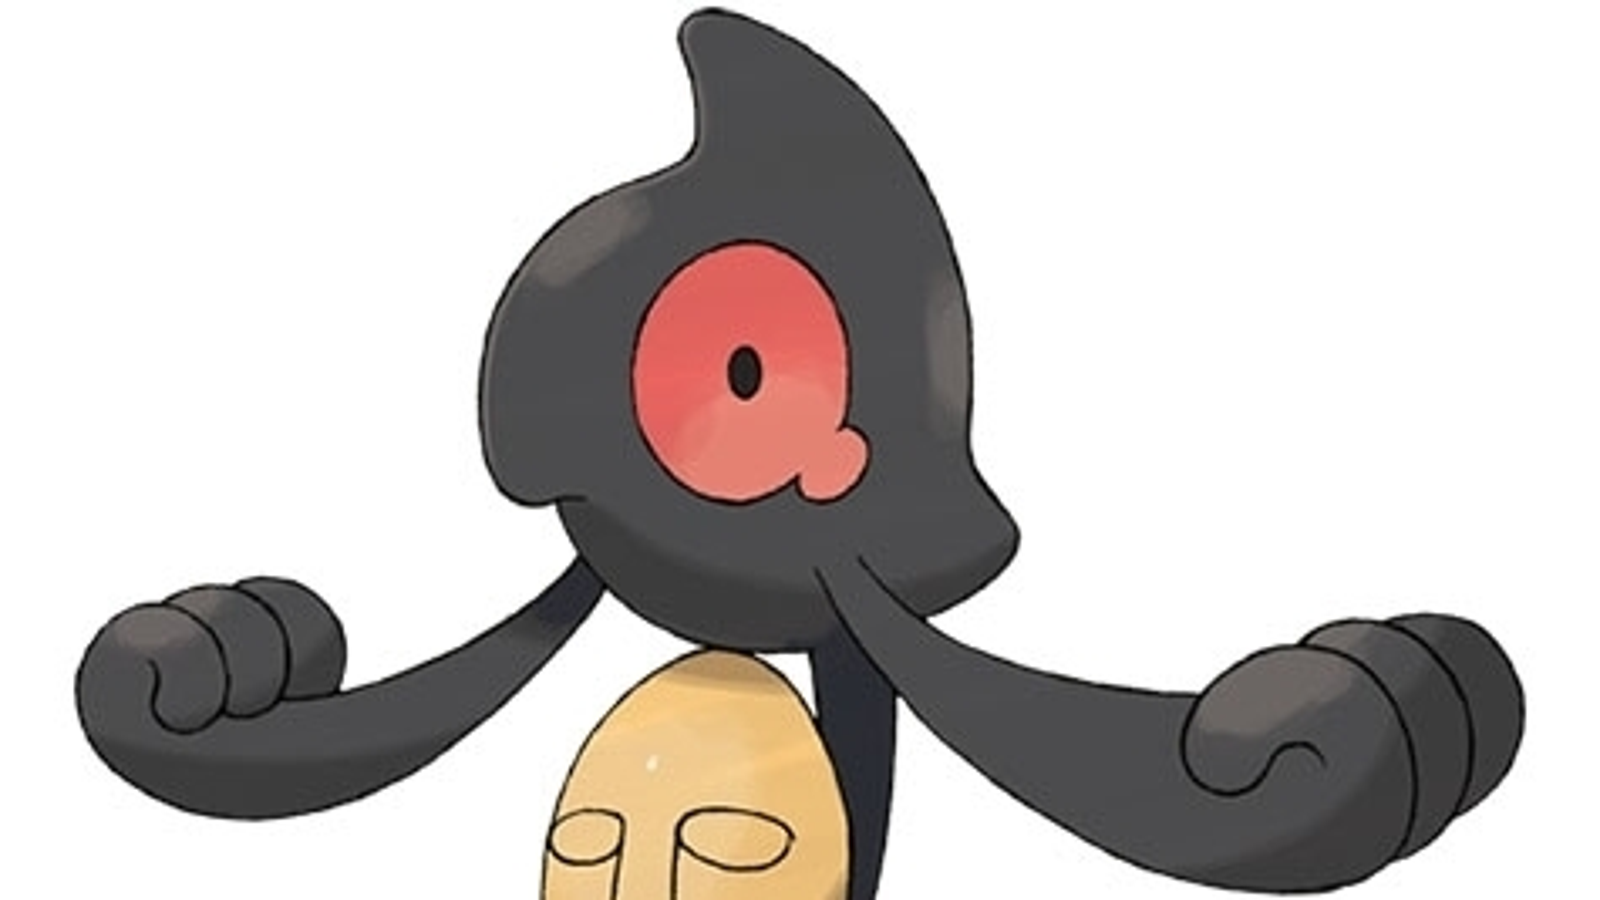 Pokémon Go - 'O que se esconde por trás da máscara?' - Etapas e